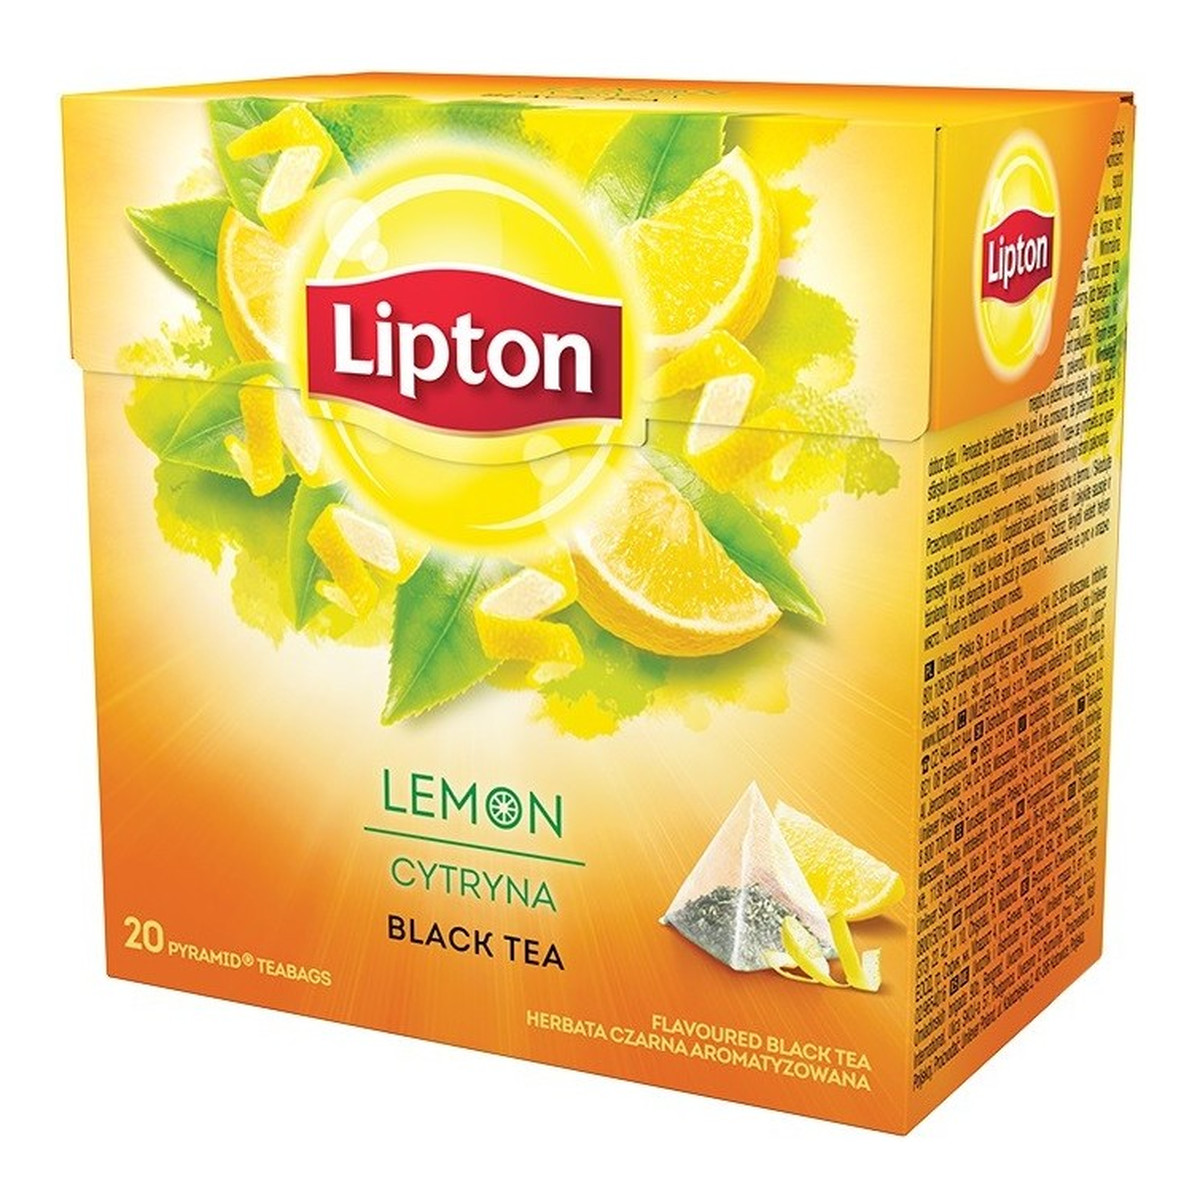 Lipton Black Tea herbata czarna aromatyzowana Cytryna 20 piramidek 34g